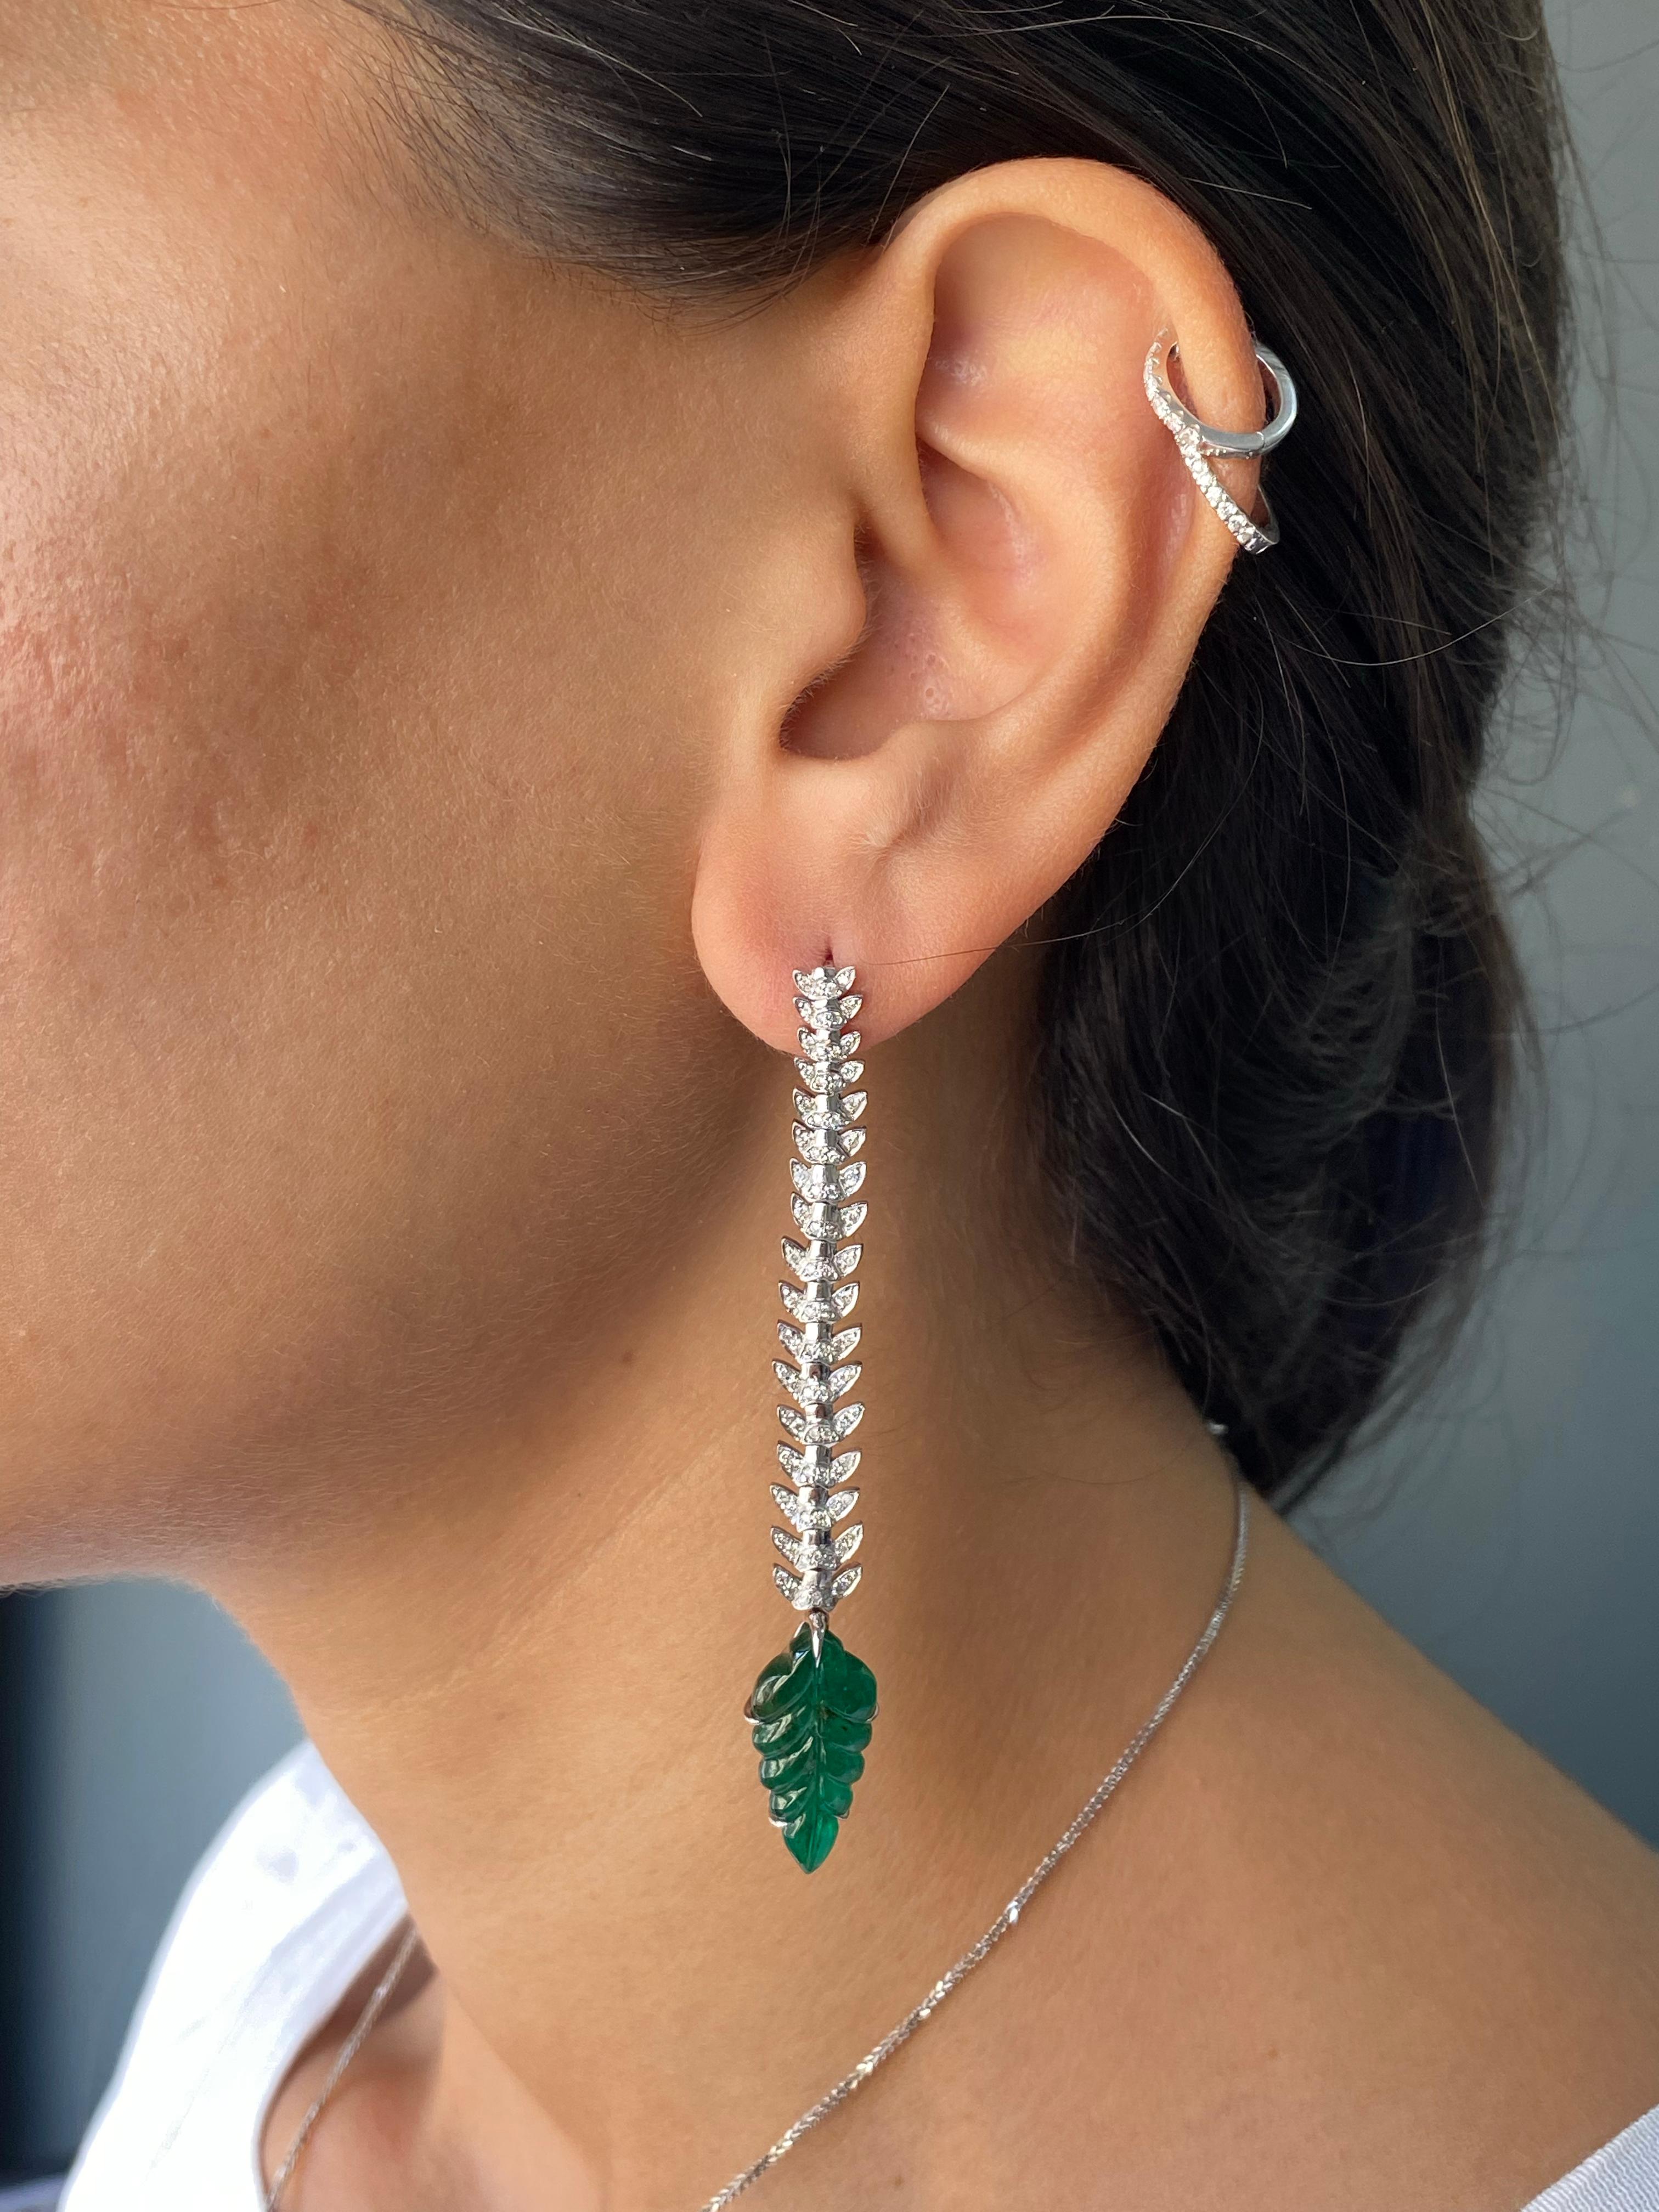 Ein atemberaubendes Paar Art-Deco-Ohrringe mit 8 Karat sambischen Smaragden und Diamanten, gefasst in massivem 18 Karat Weißgold. Die Ohrringe sind sehr flexibel und leicht, sie sind ca. 2,75 cm lang und werden mit einer Push-Pull-Halterung